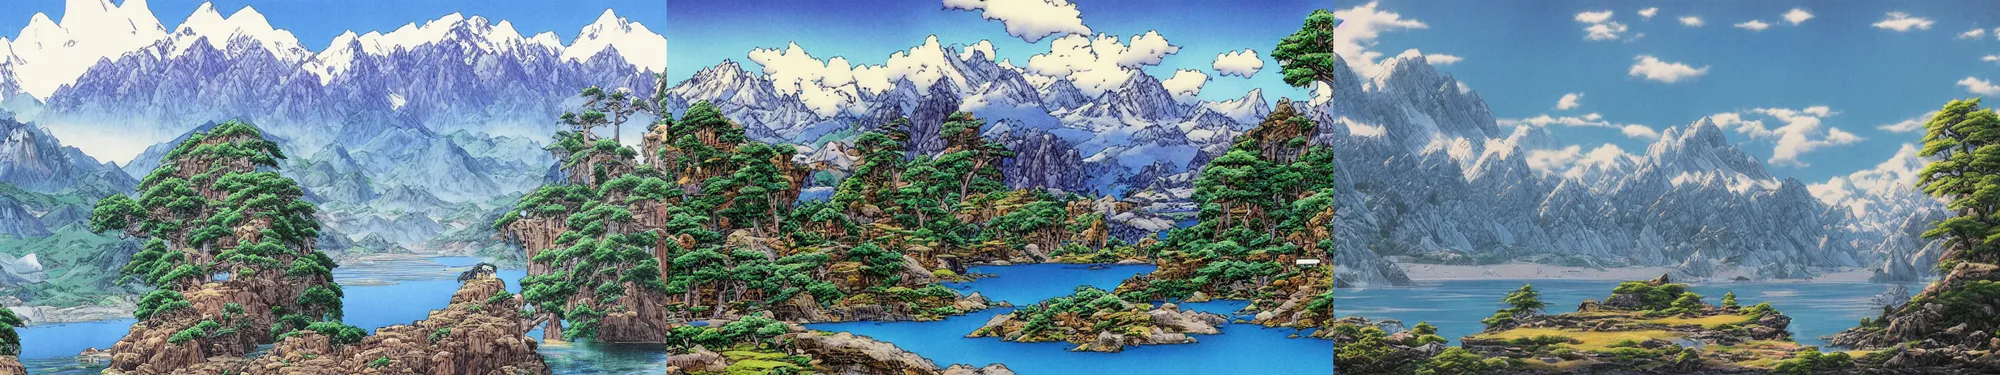 Prompt: lakeside mountains, by akira toriyama